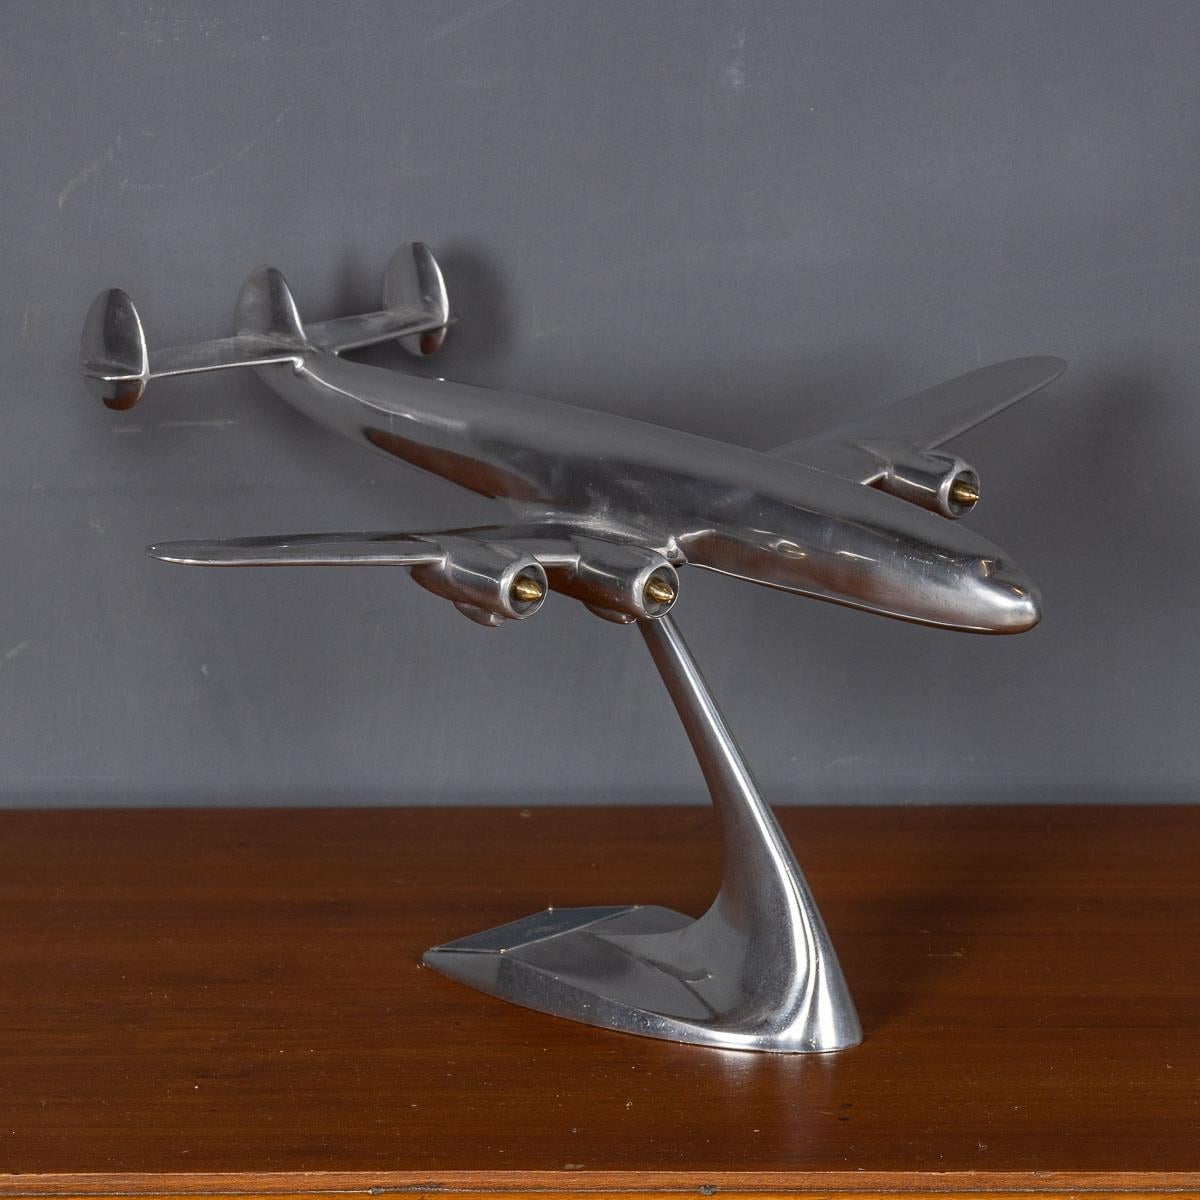 Ein exquisites Modell einer Qantas Empire Airways Super Constellation aus dem 20. Jahrhundert, fachmännisch aus Aluminium gefertigt und auf einem passenden Aluminiumsockel präsentiert. Dieses bemerkenswerte Stück ist ein fesselnder Blickfang, der zu